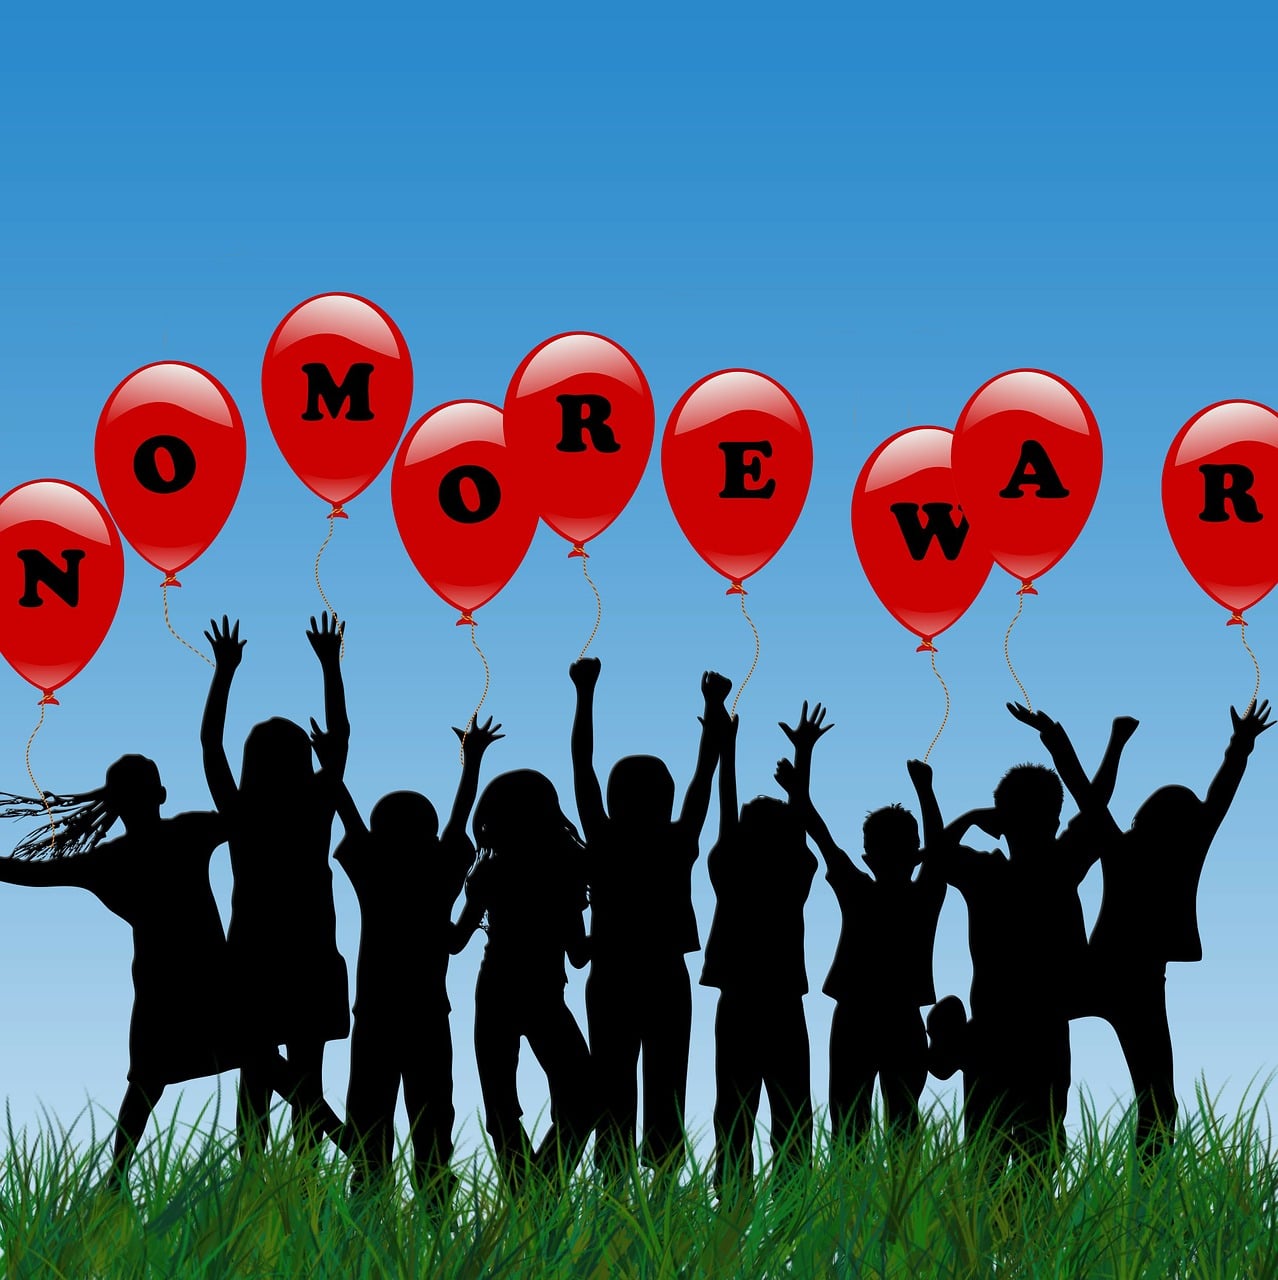 children, no war, red balloon,